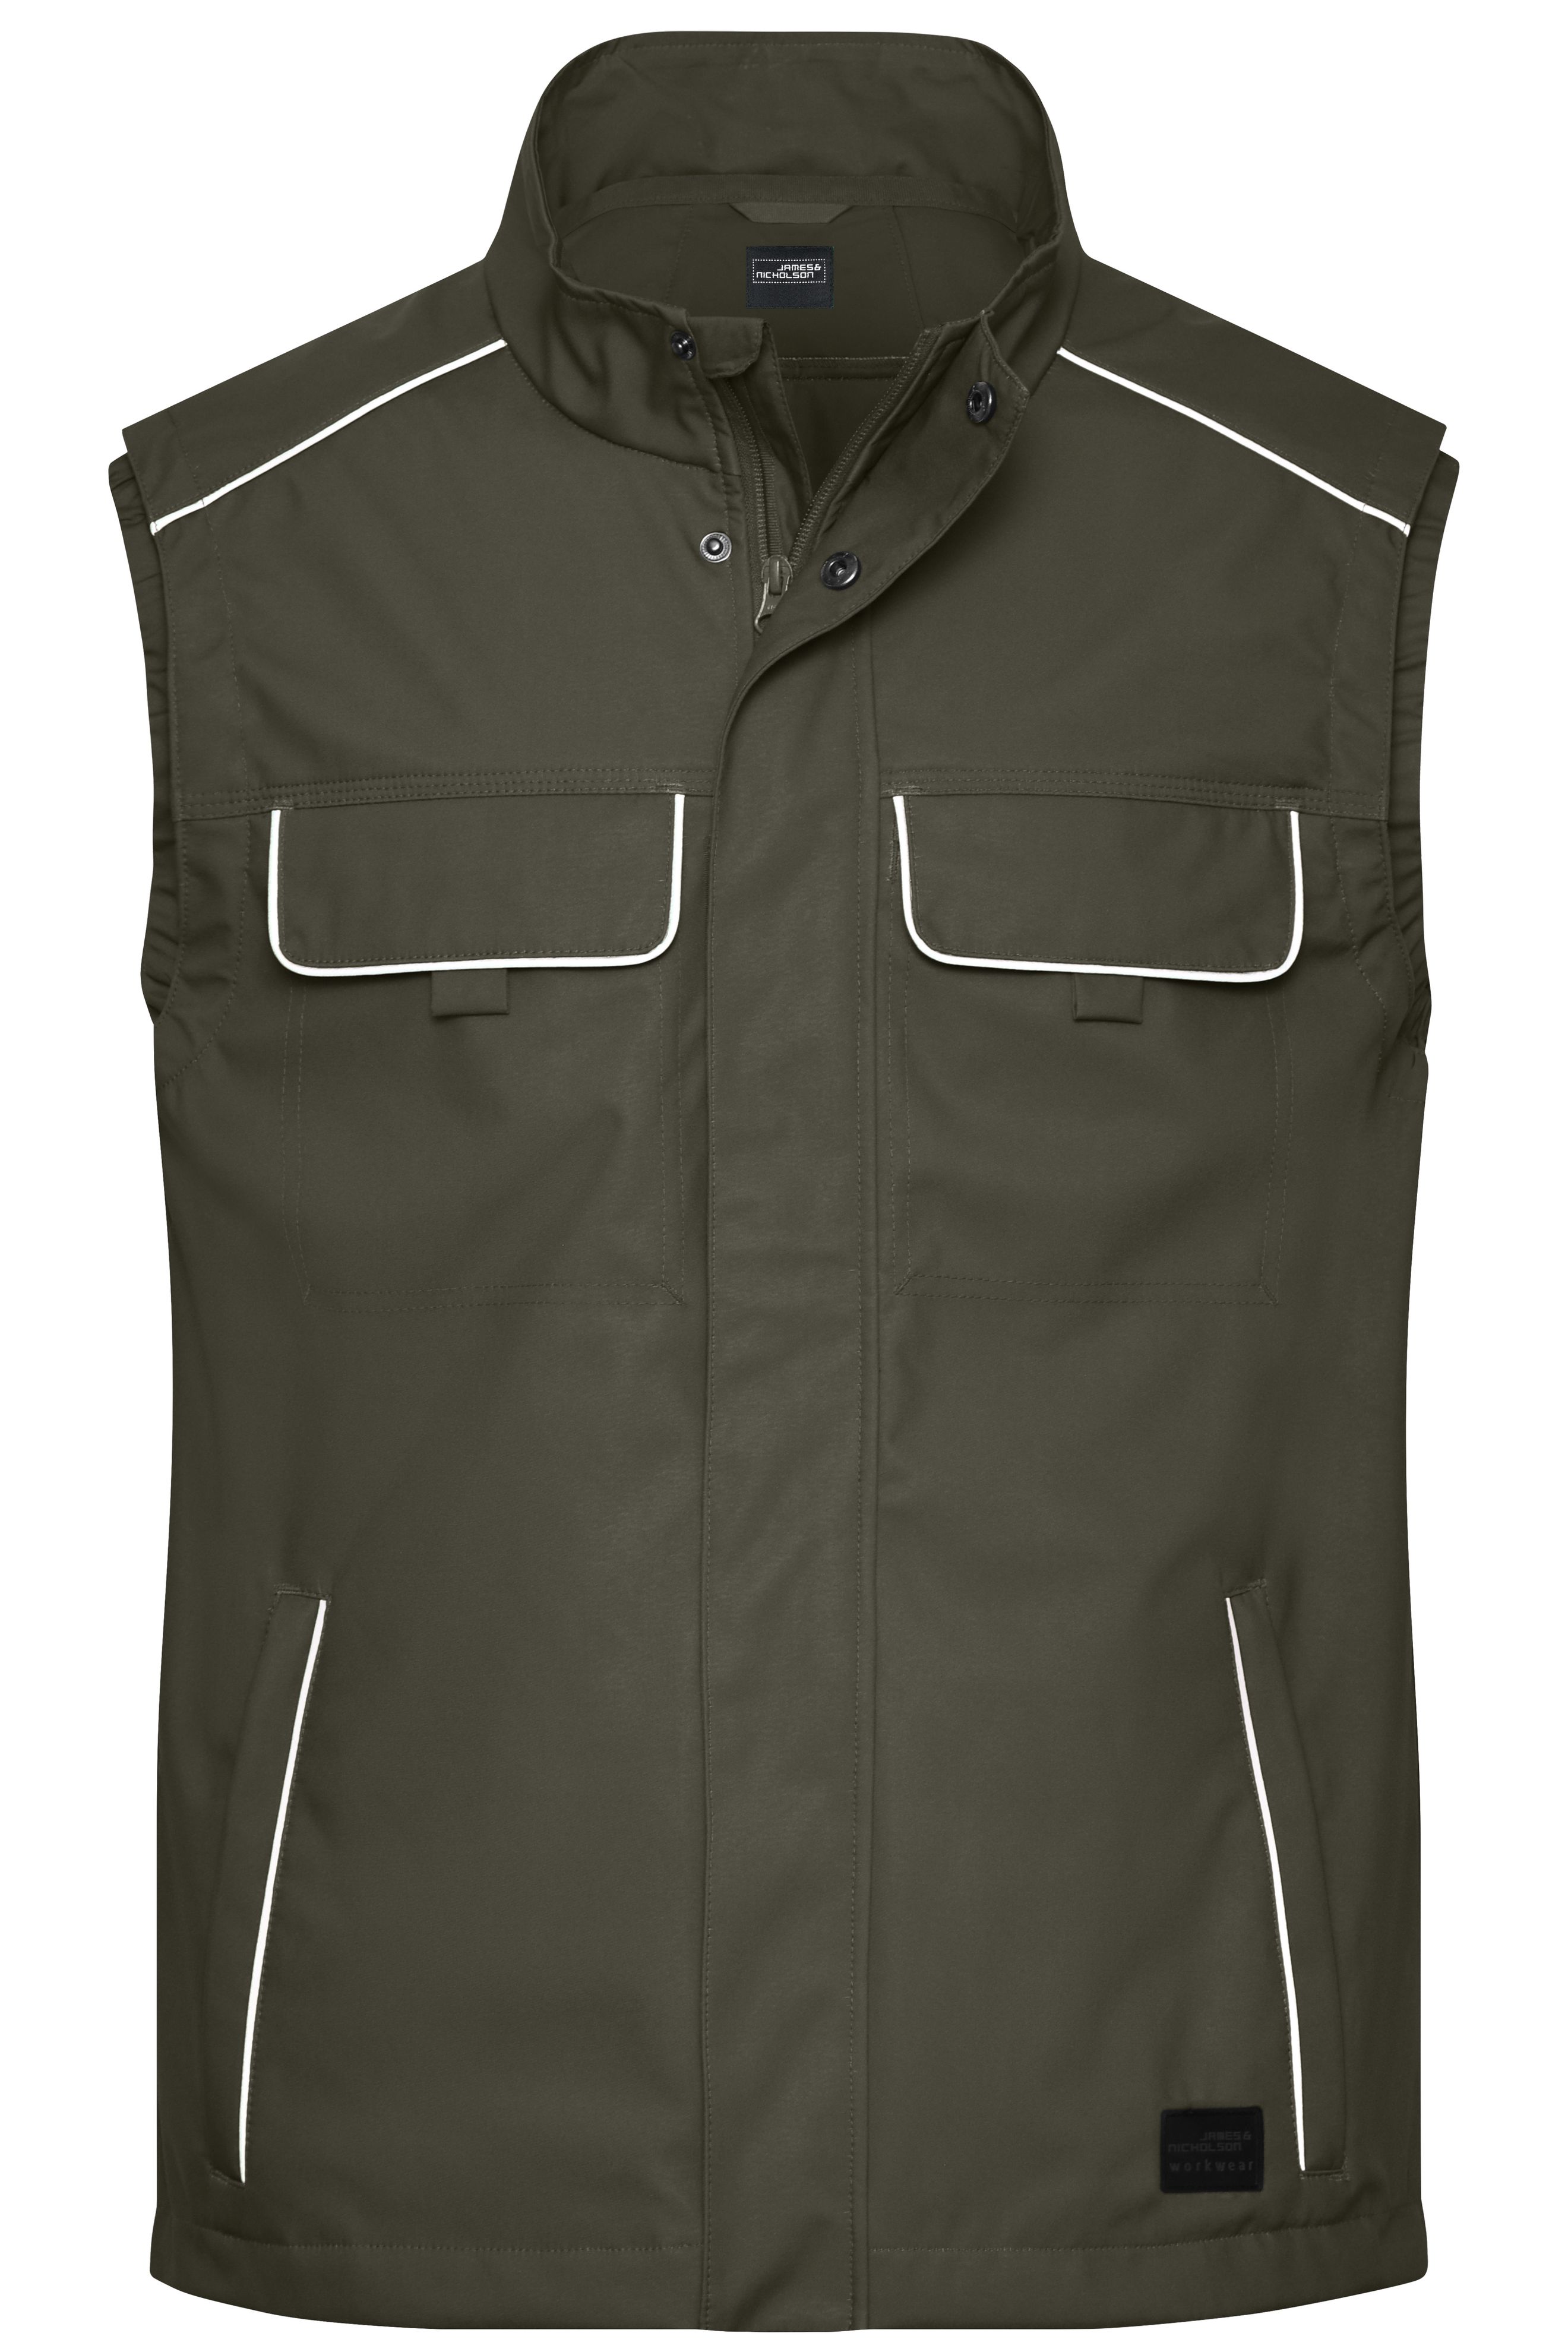 Workwear Softshell Light Vest - SOLID - JN881 Professionelle, leichte Softshellweste im cleanen Look mit hochwertigen Details